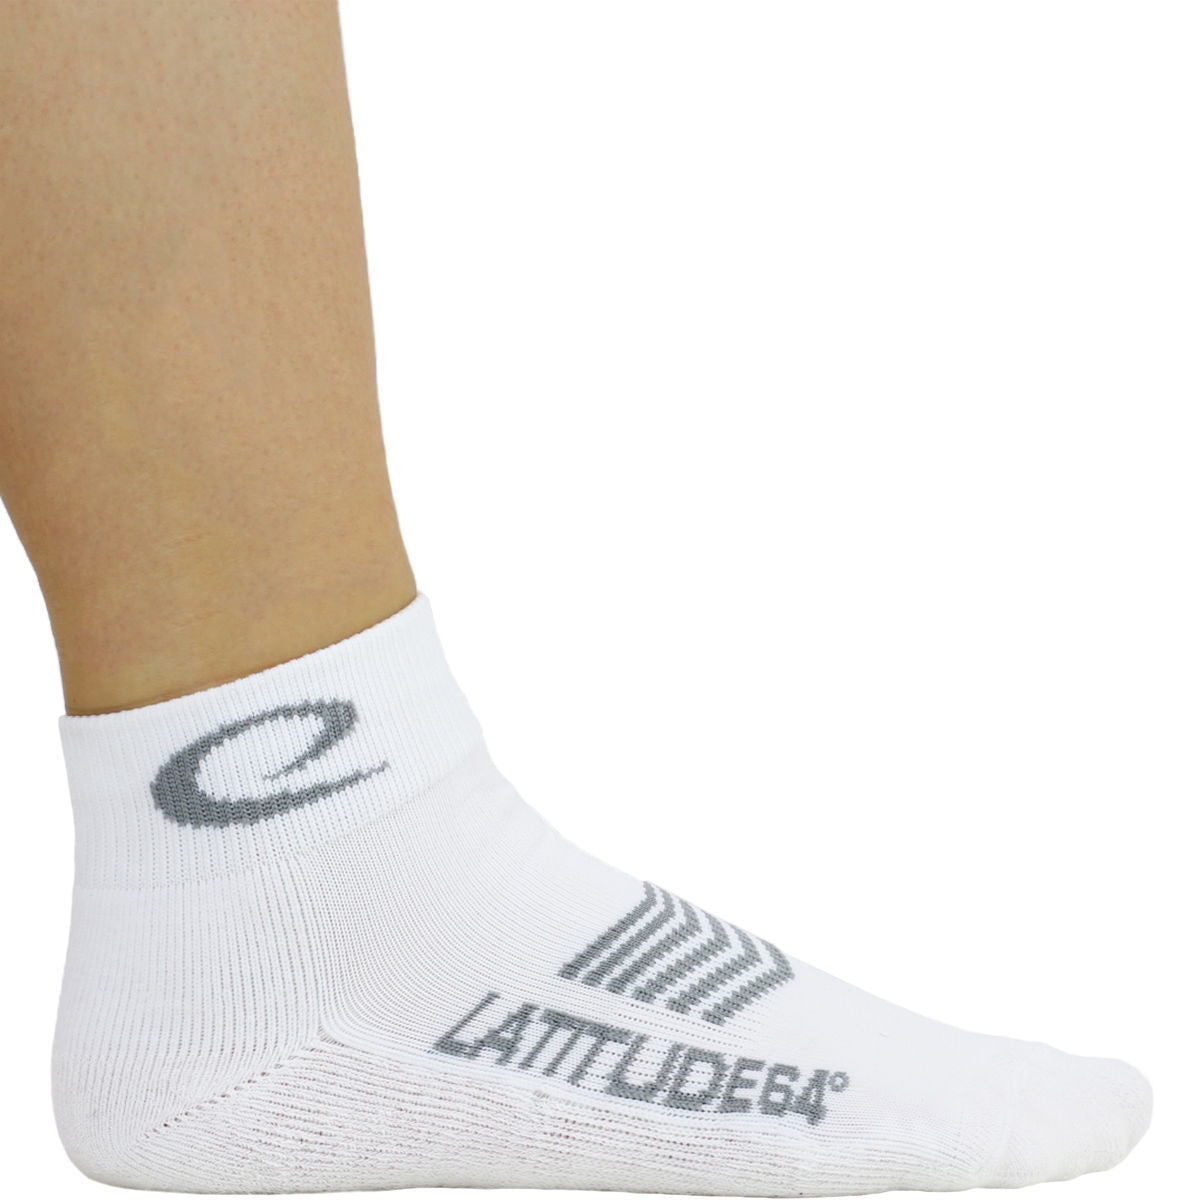 Latitude 64 Ankle Socks 2-Pack